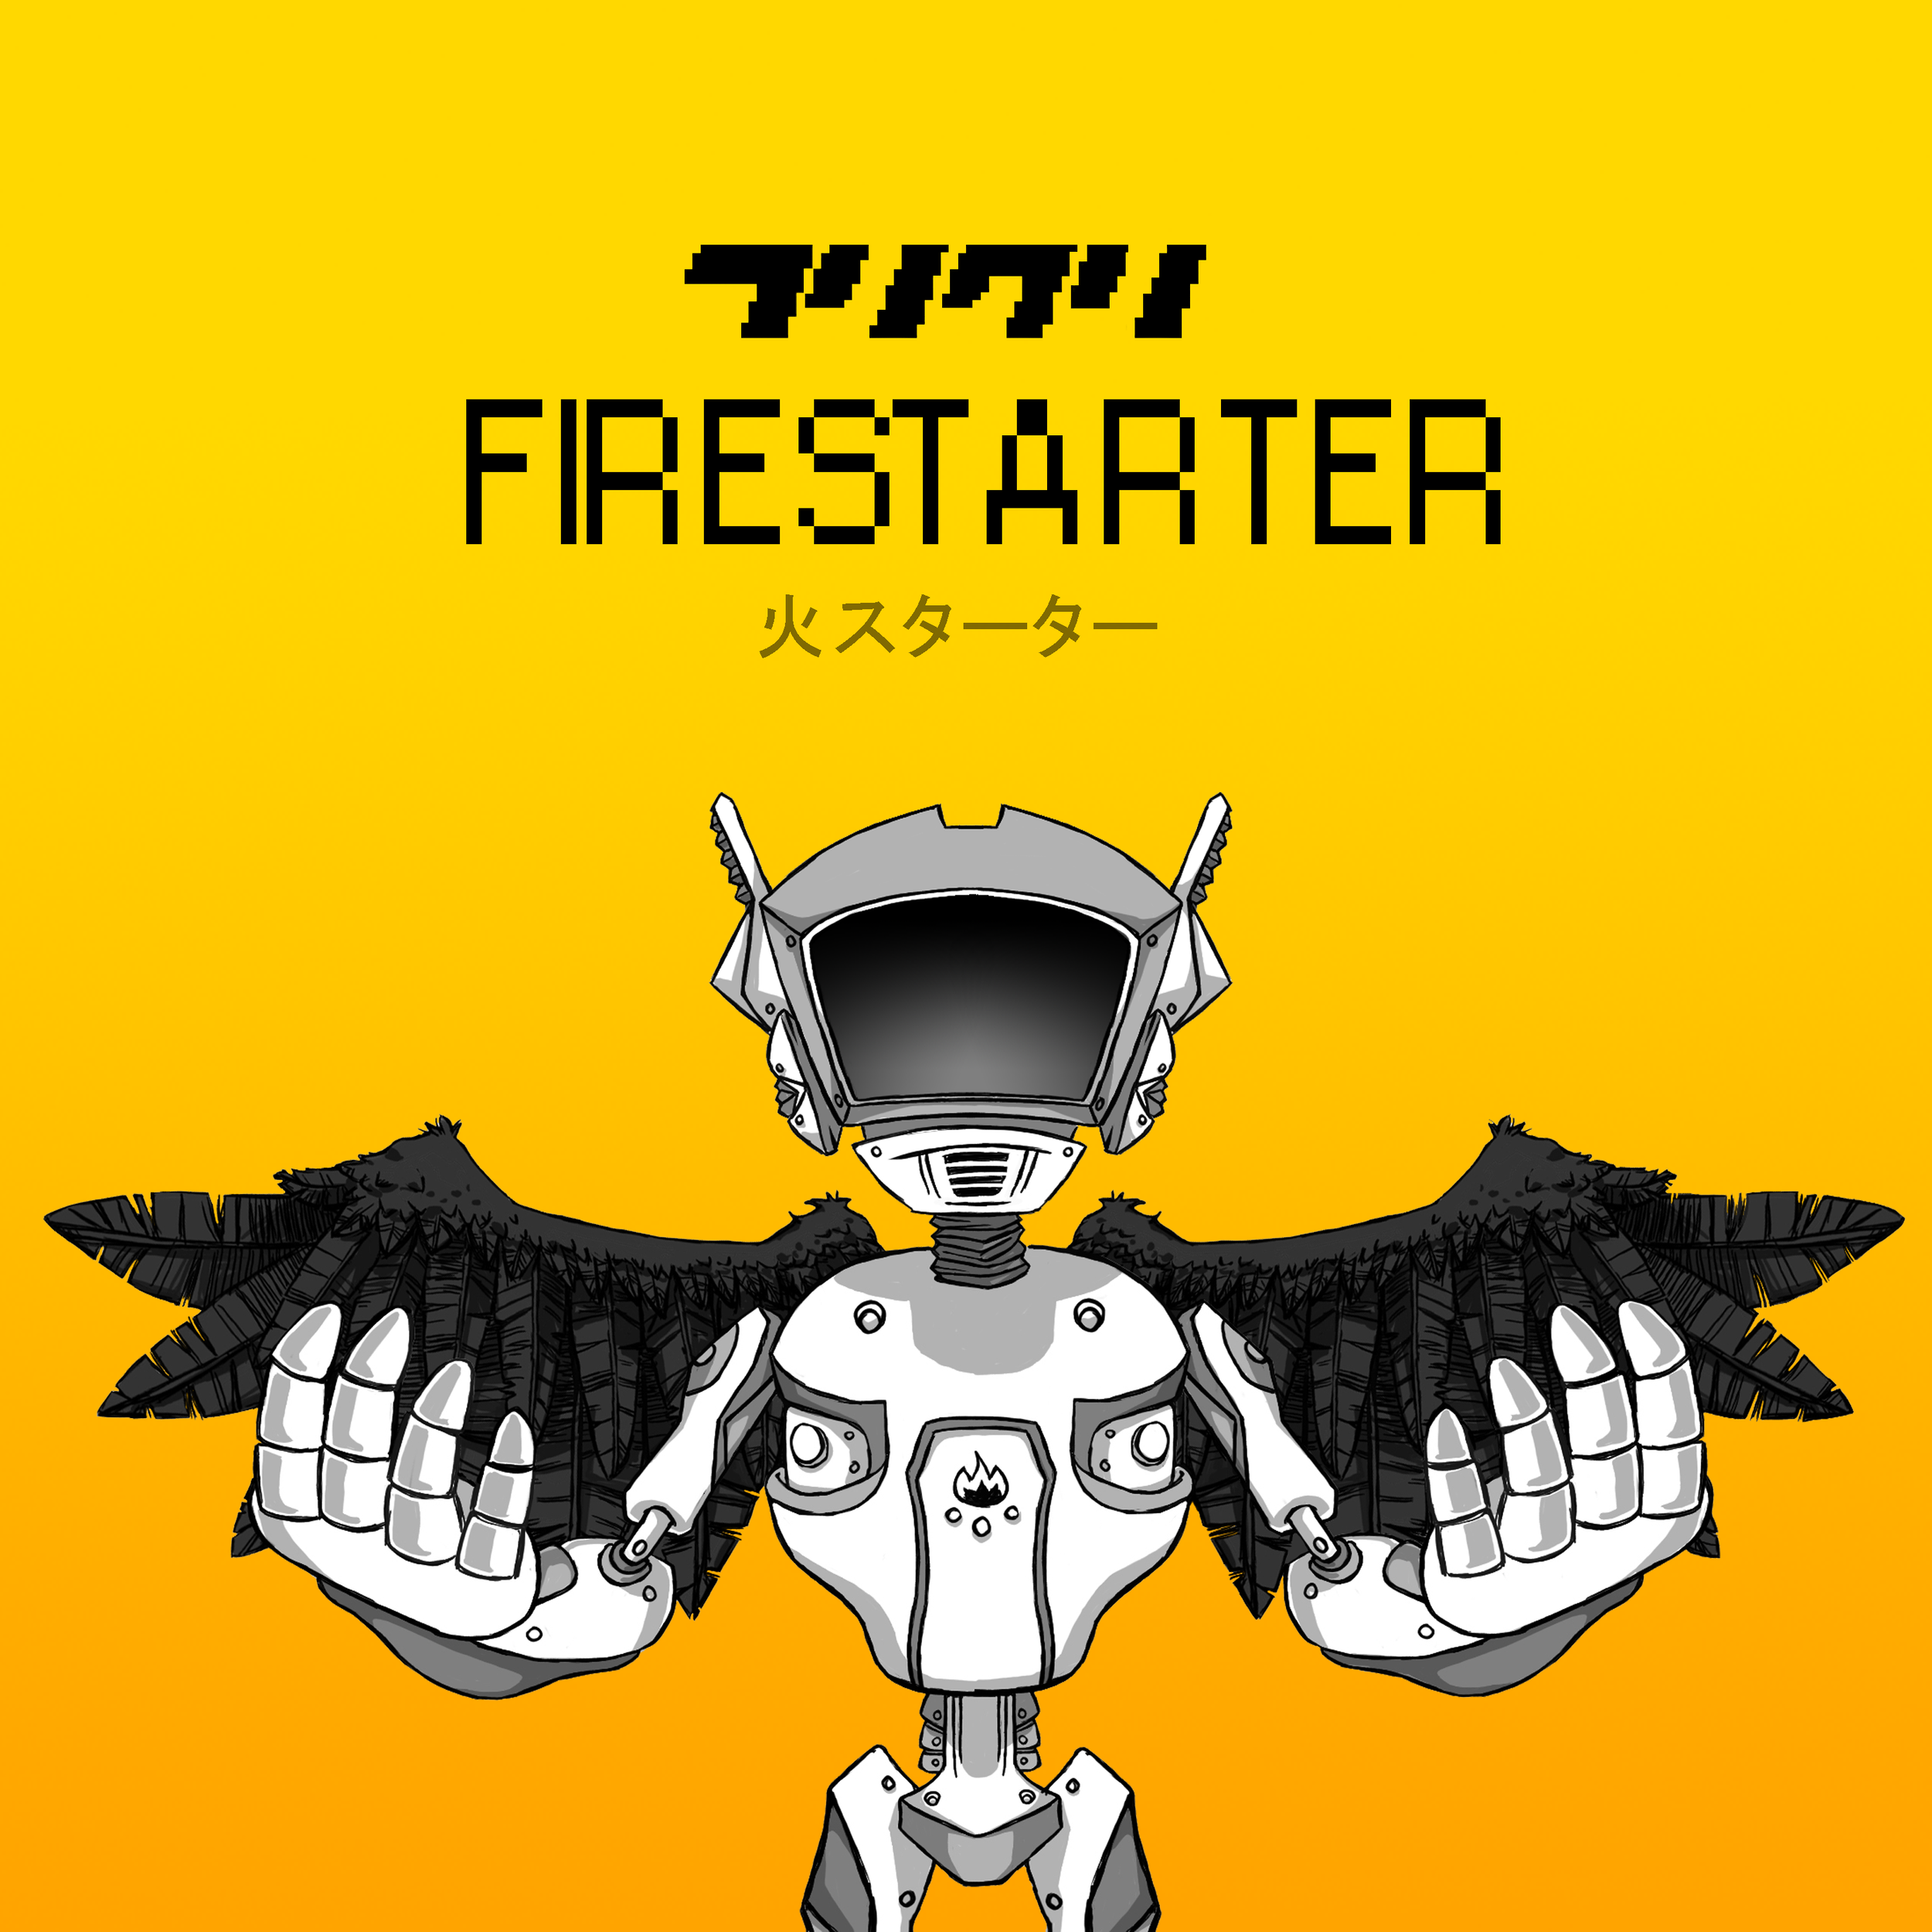 Firestarter (web browser, 2018) - COMPOSER